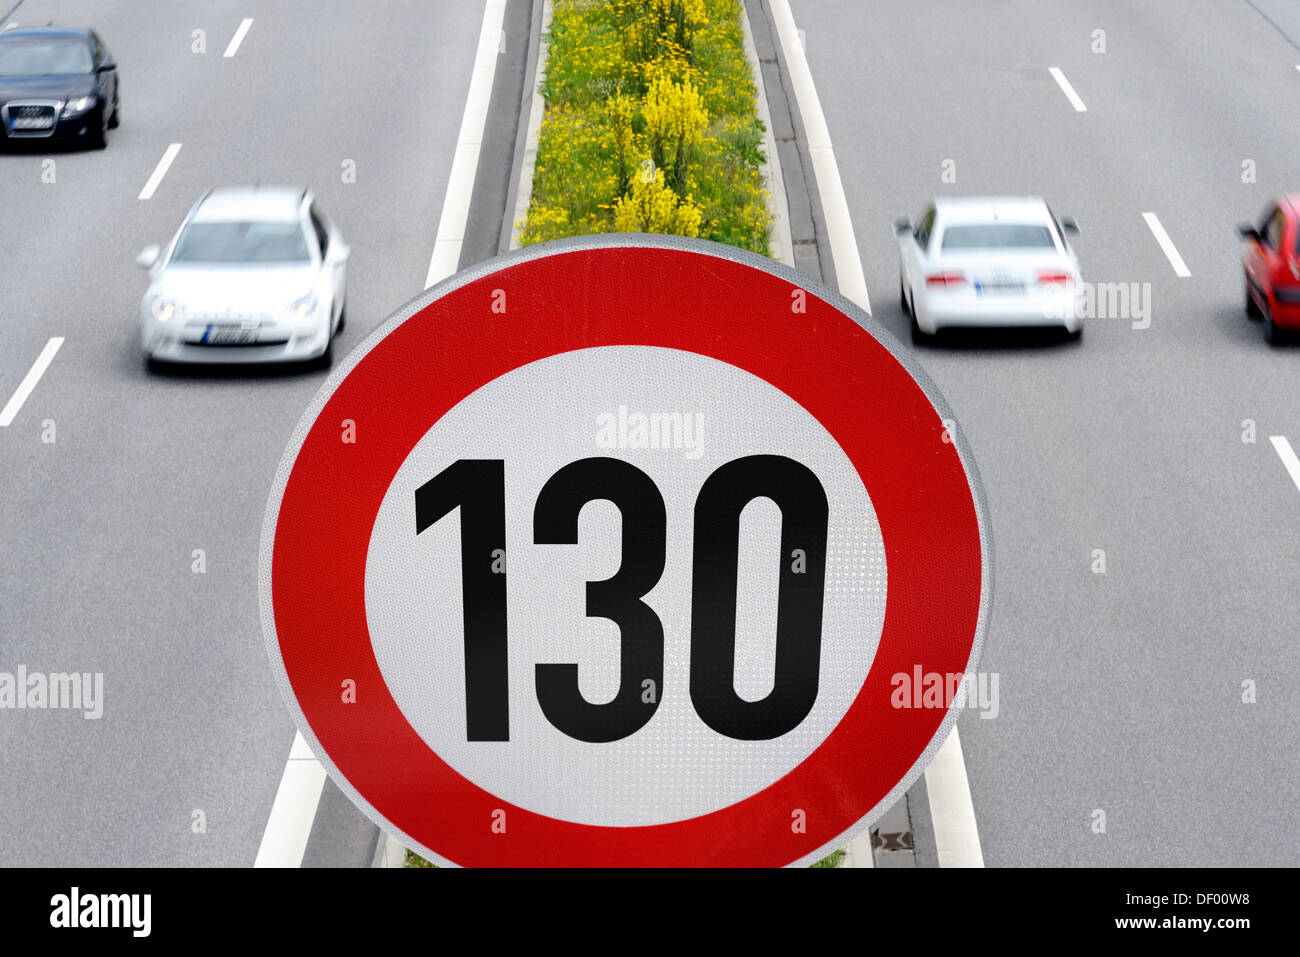 Autobahn mit Geschwindigkeitsbegrenzung 130 km/h, Tempolimit auf Autobahnen, Autobahn Mit Geschwindigkeitsbegrenzung 130 km/h, Tempolimit au Stockfoto